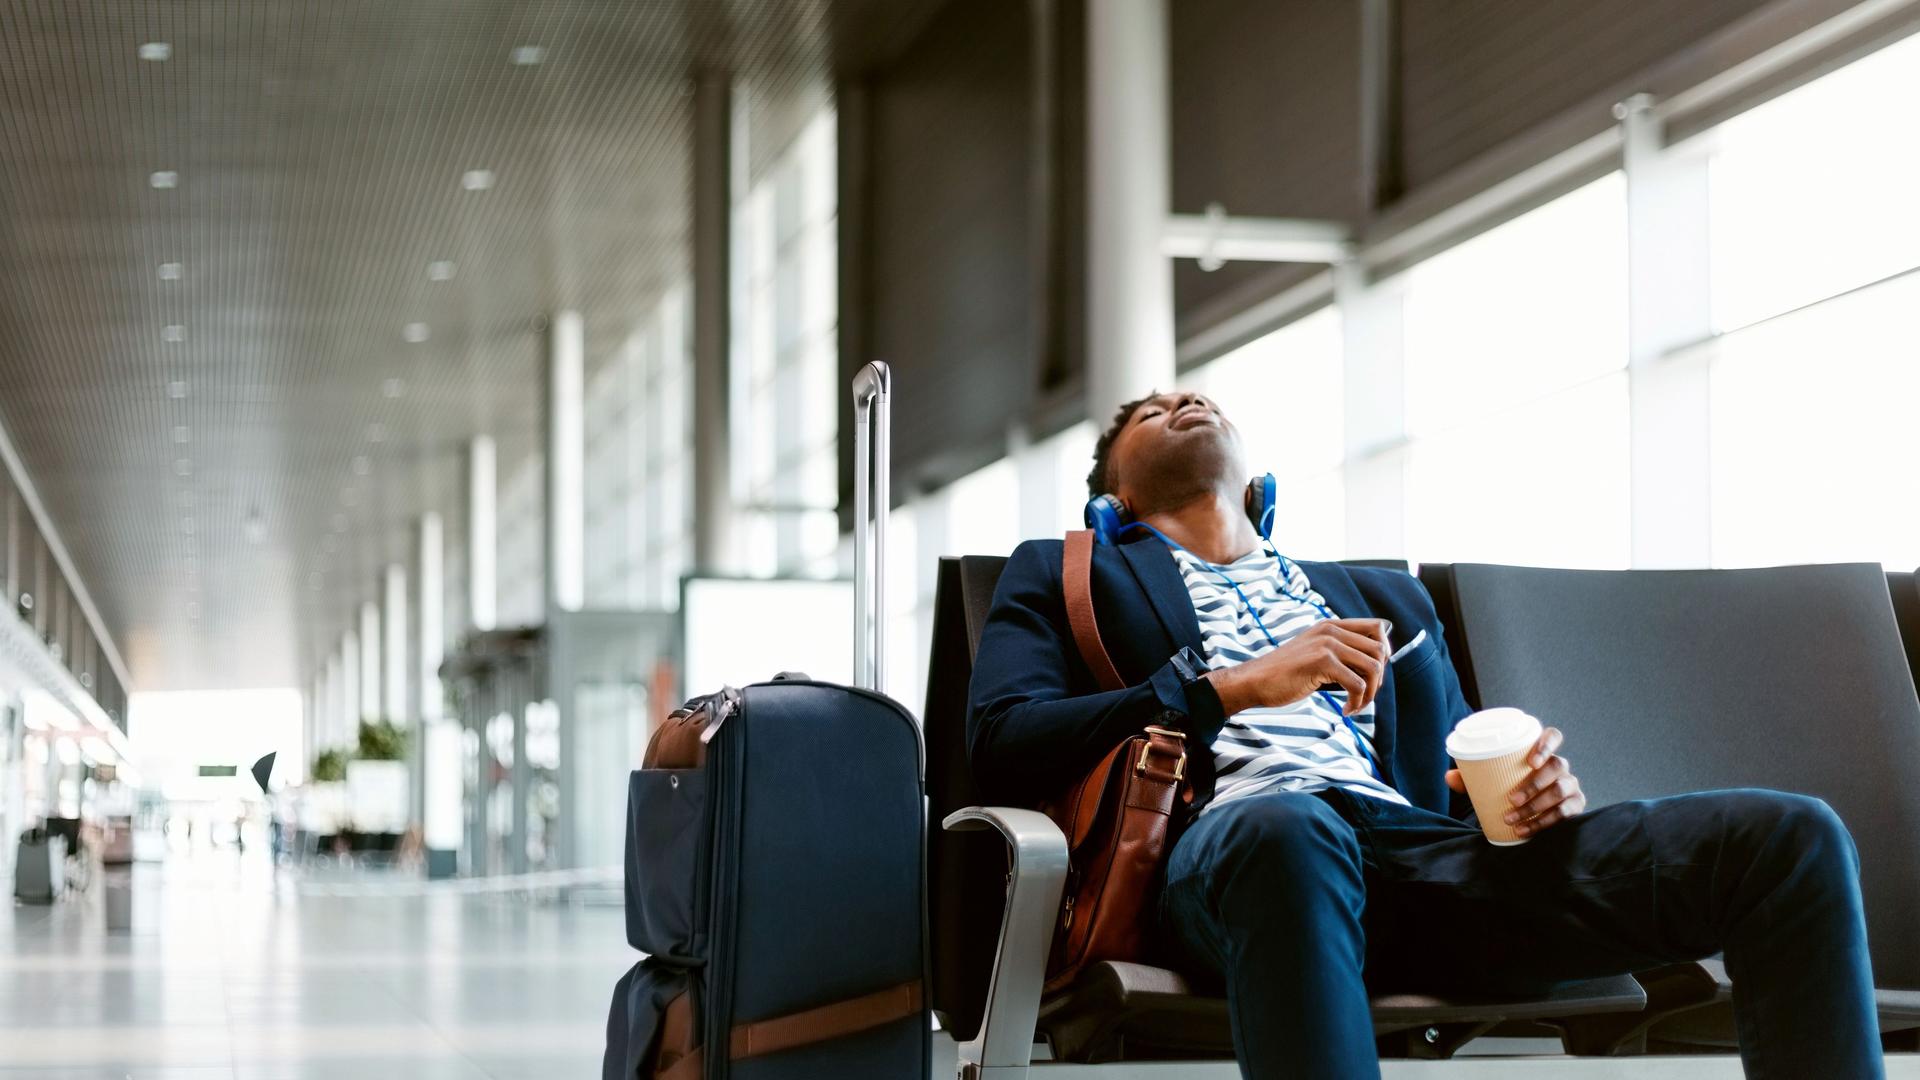 Ein junger Mann sitzt müde, mit geschlossenen Augen, Kopfhörern und einem Kaffebecher neben seinem Gepäck am Flughafen und wartet.